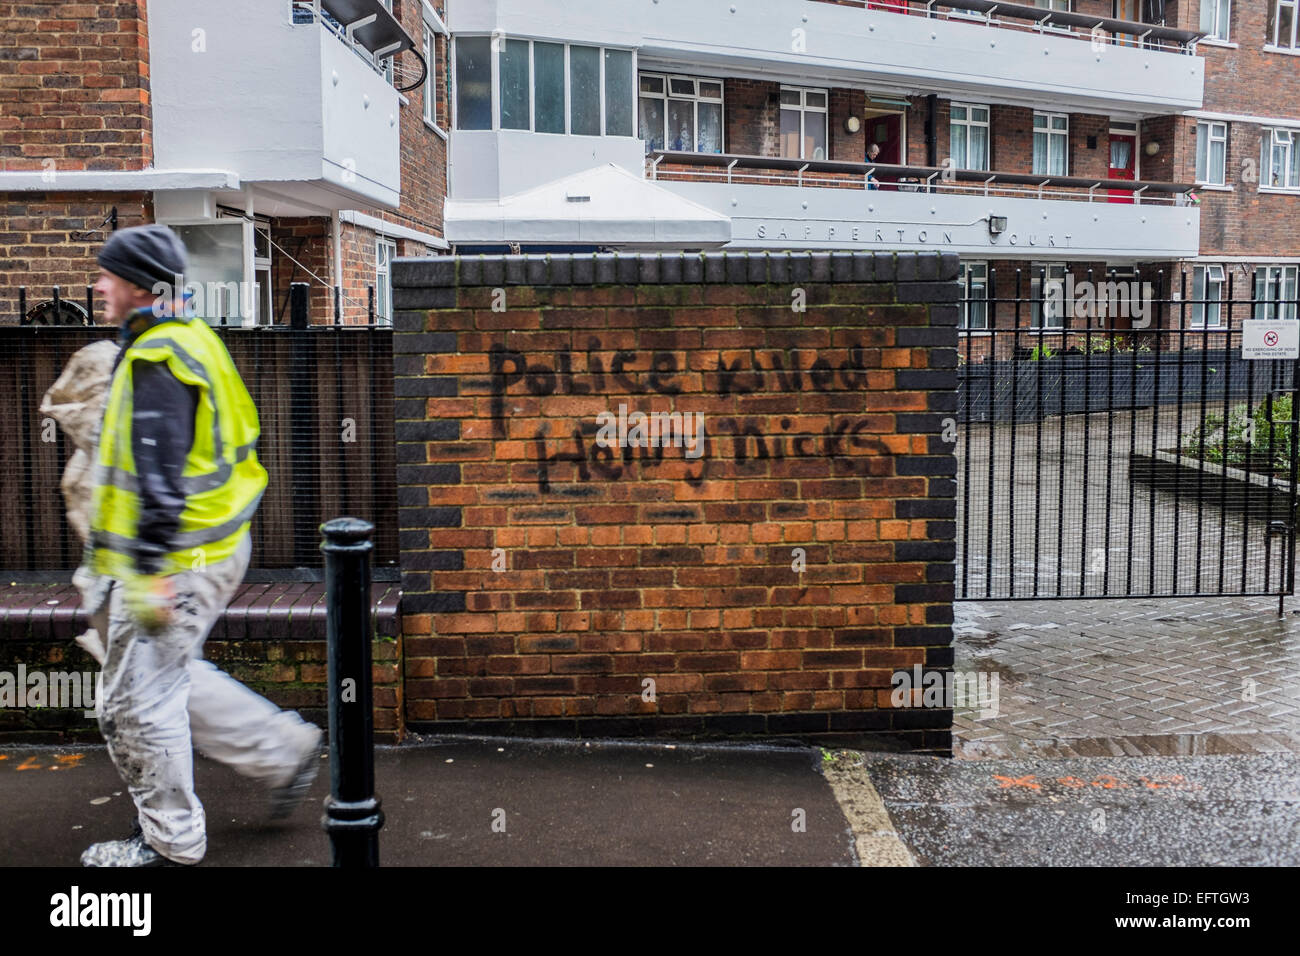 La police anti graffiti sur un mur de briques dans le nord de Londres Banque D'Images